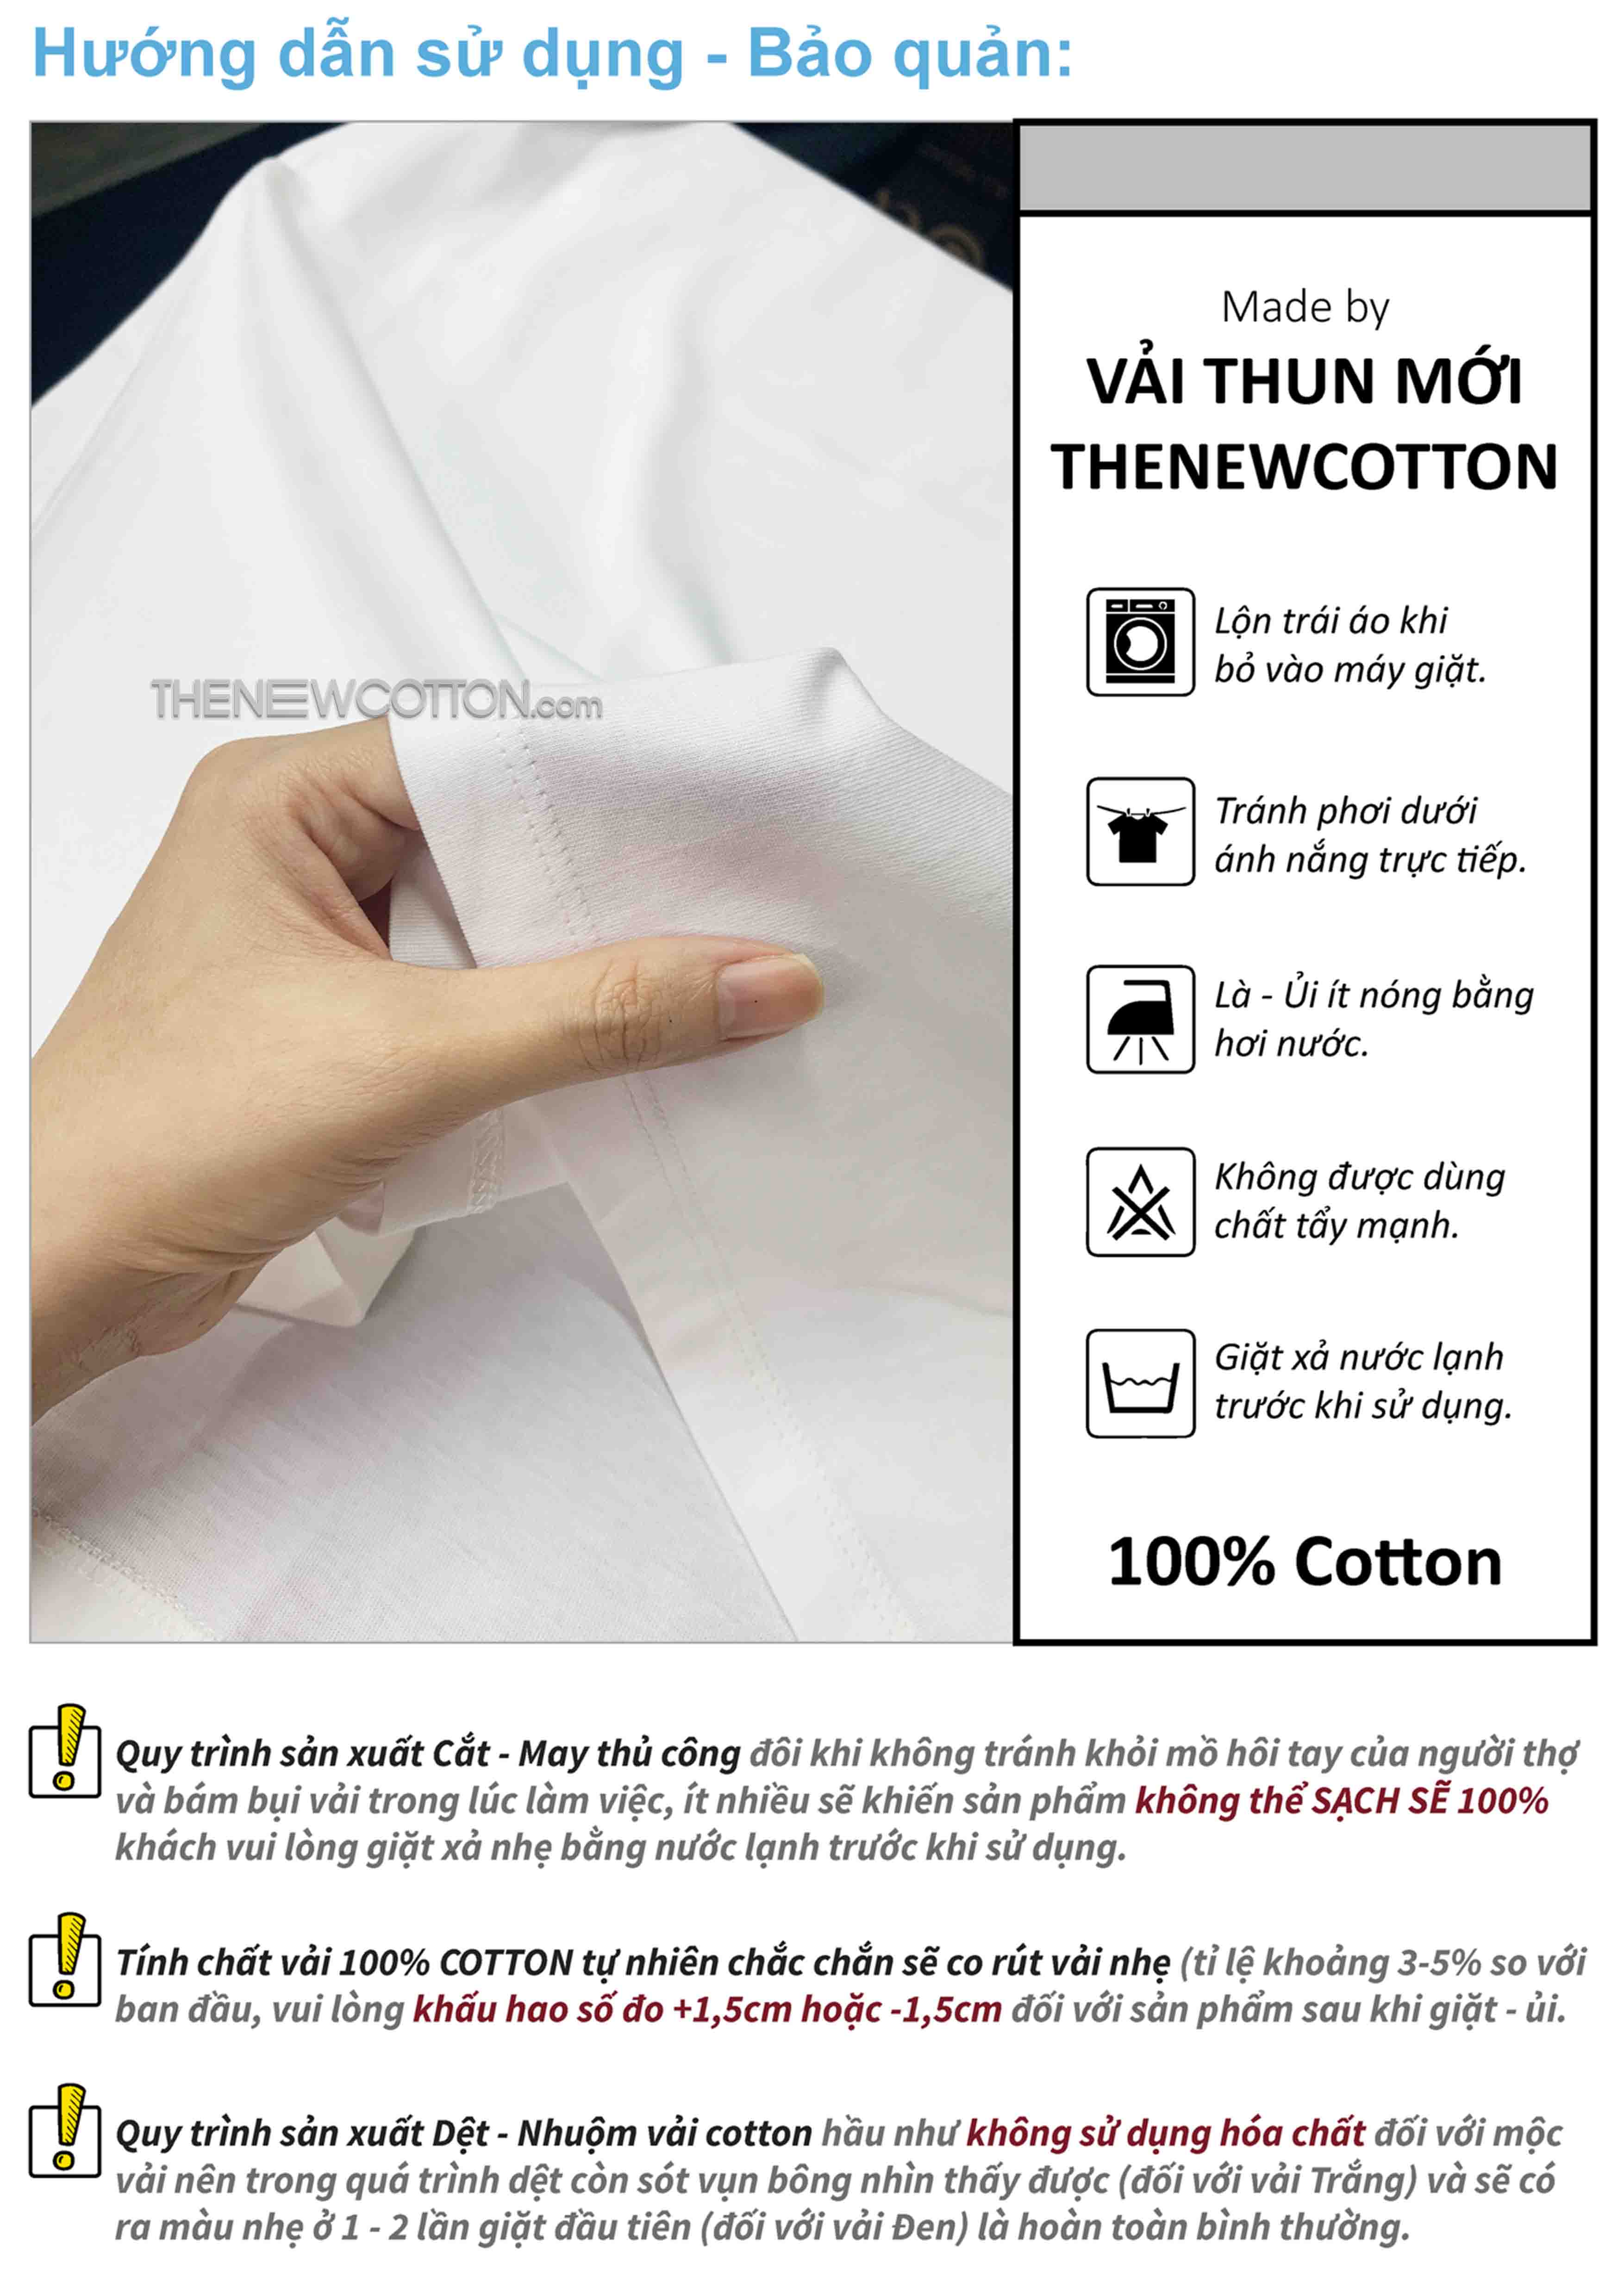 Chuyên Sỉ Phôi Áo Trơn x Vải Thun Premium 100% Cotton Mộc Úc | Xưởng May Local Brand Theo Yêu Cầu TheNewCotton.com